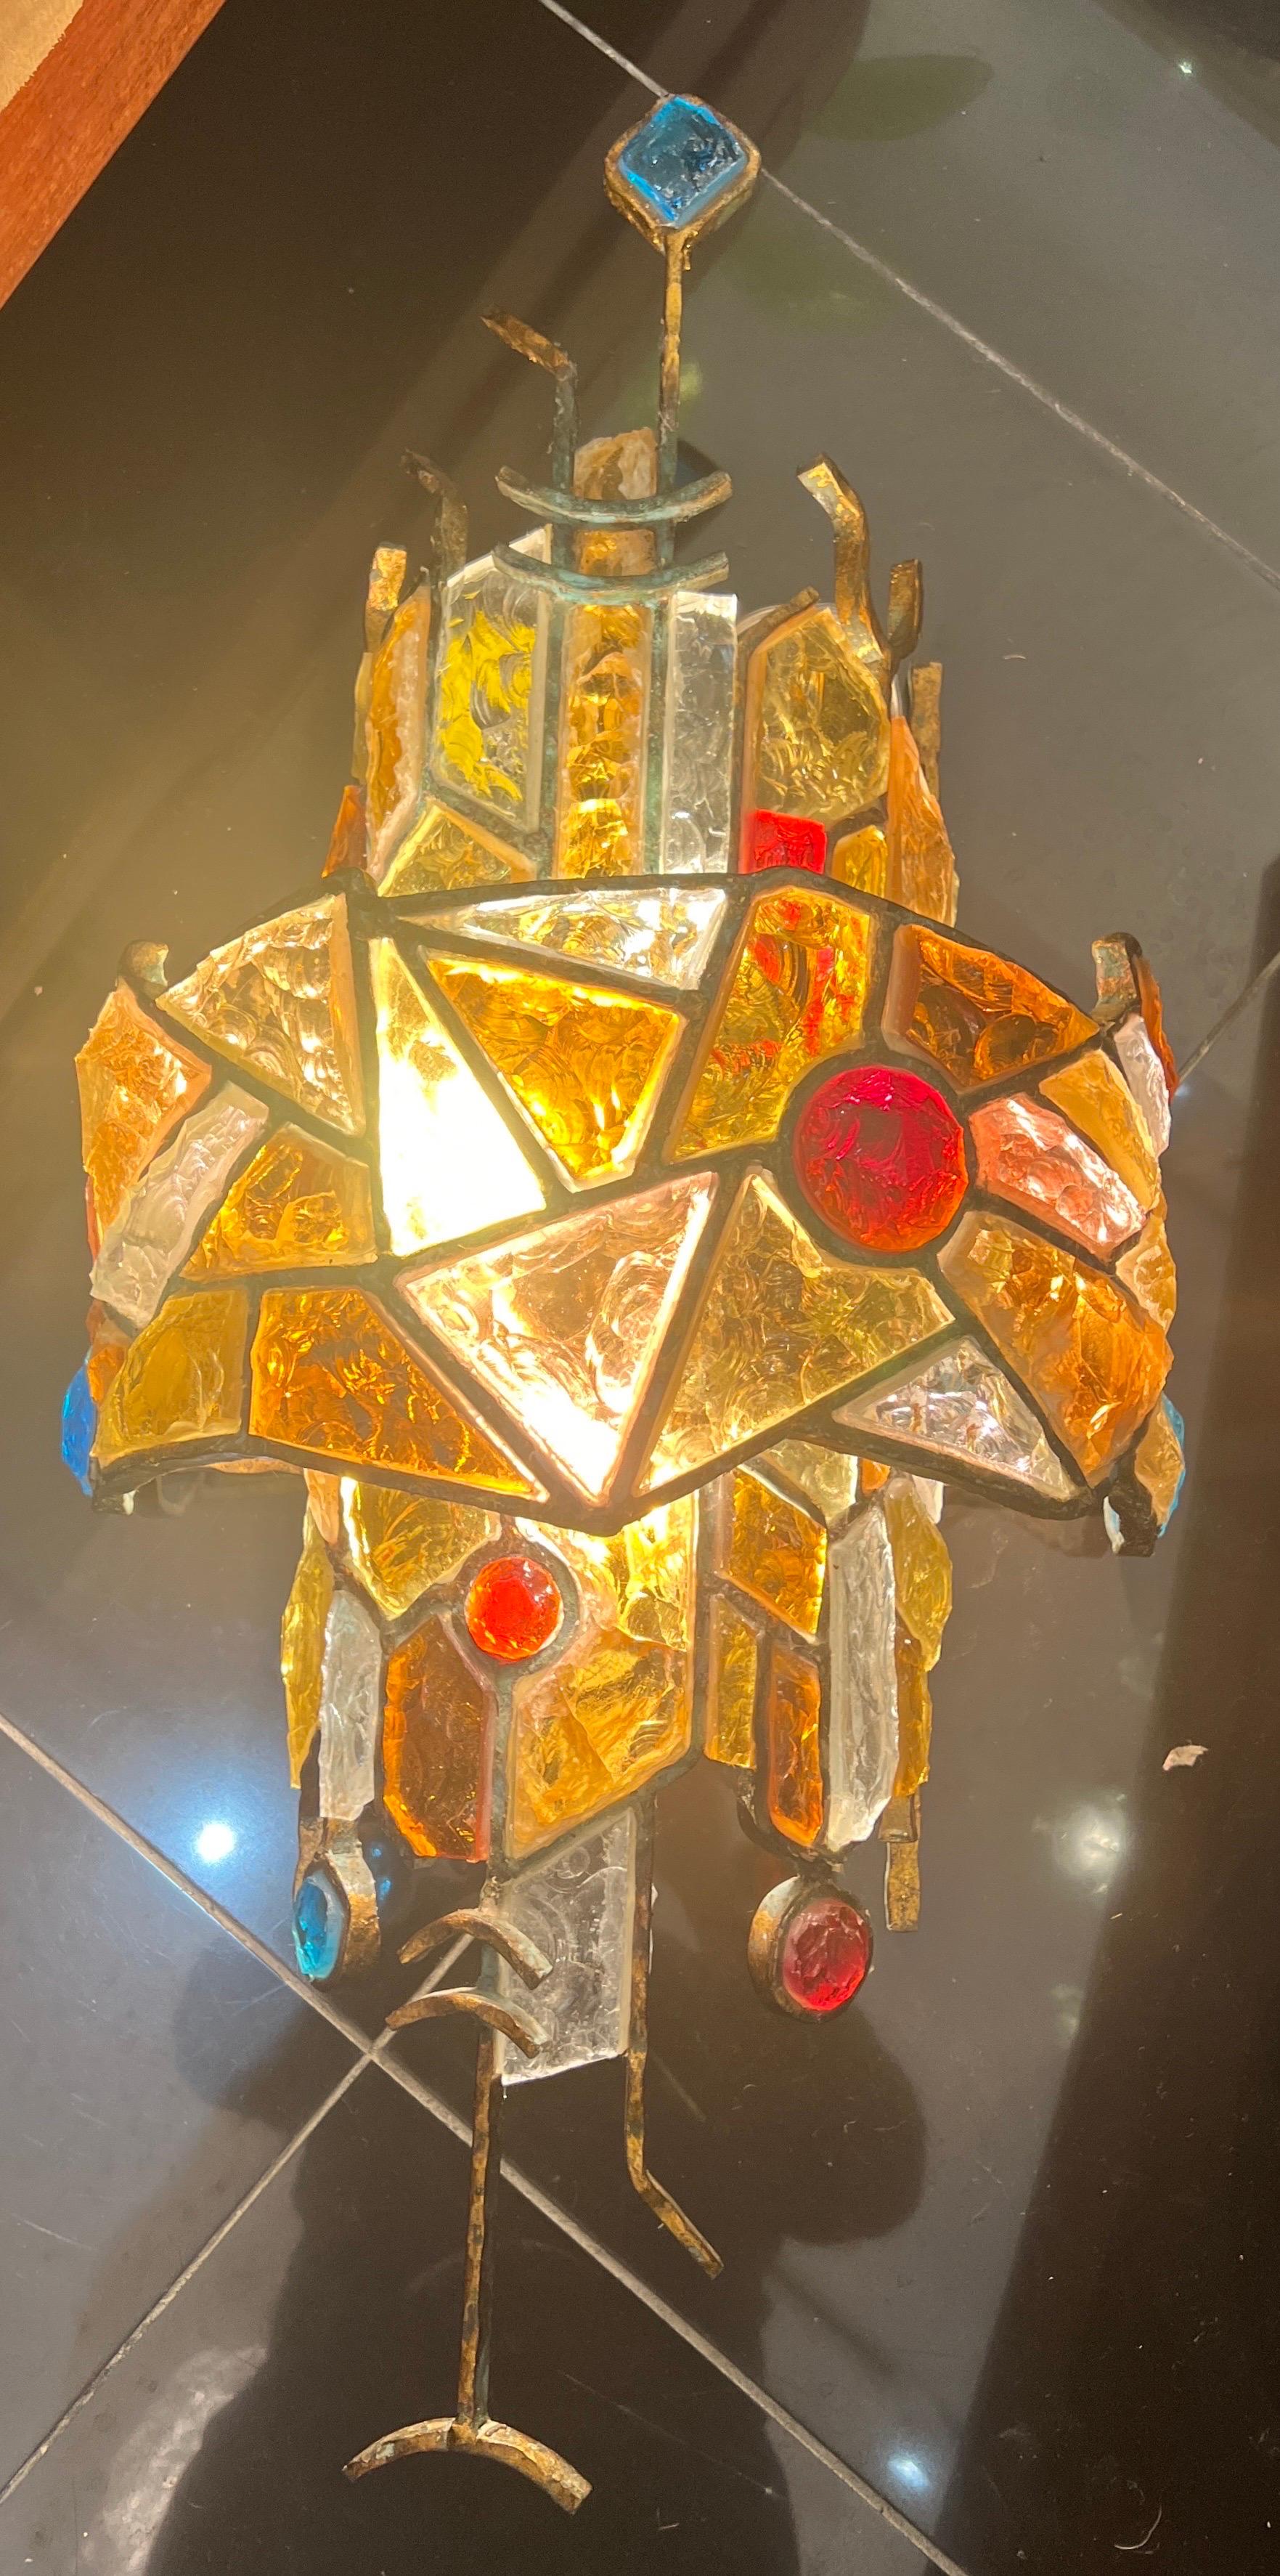 Une grande applique sculpturale composée de fer doré avec des verres multicolores chacun inséré dans un cadre métallique de différentes formes et tailles .
Conçu par Albano poli 
Fabriqué par poli Arte 
C1960
Italie  